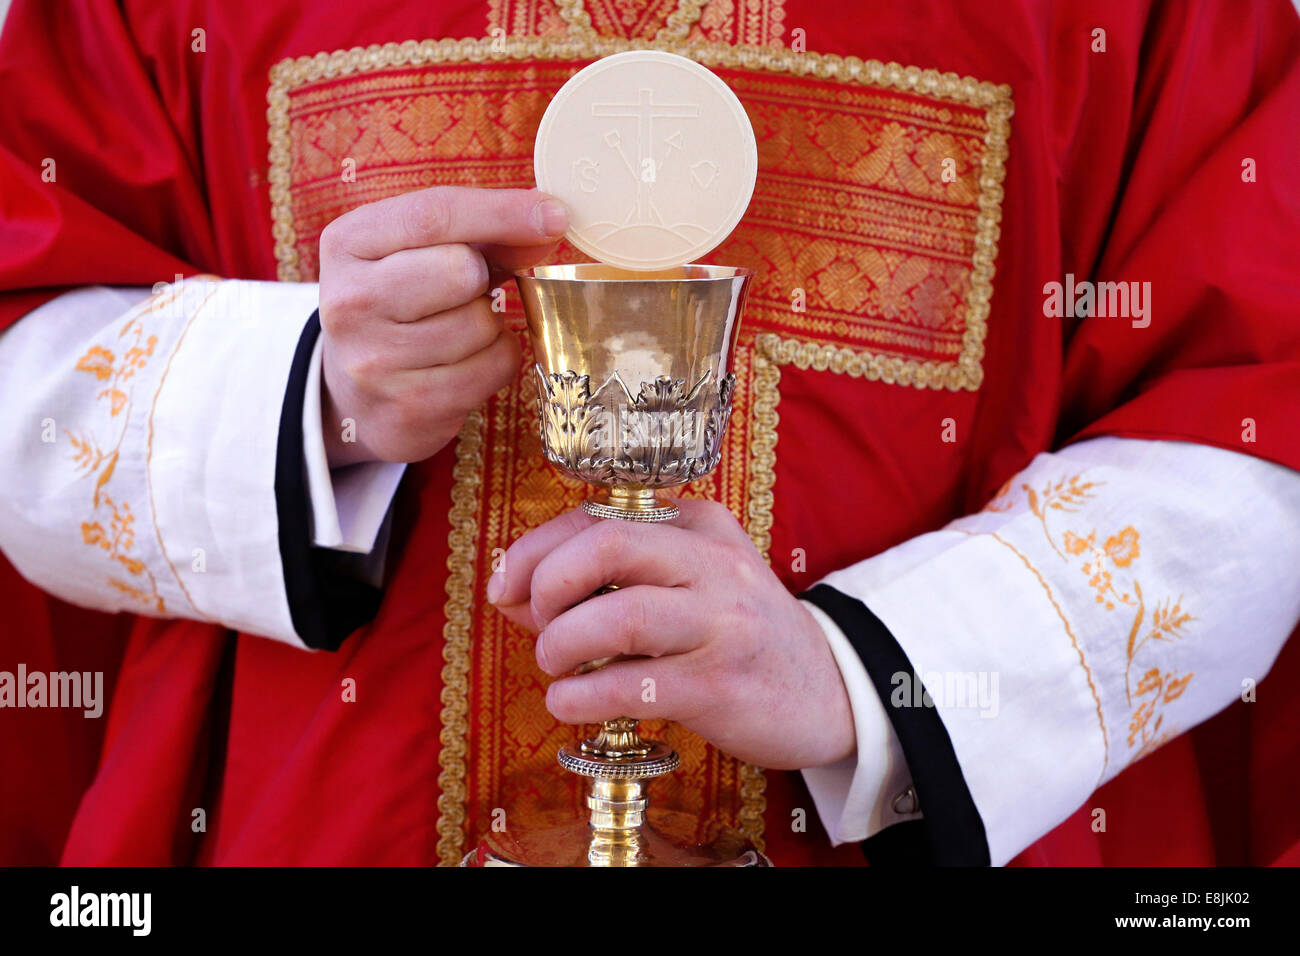 Catholic mass. Celebration of the Eucharist Stock Photo, Royalty Free ...